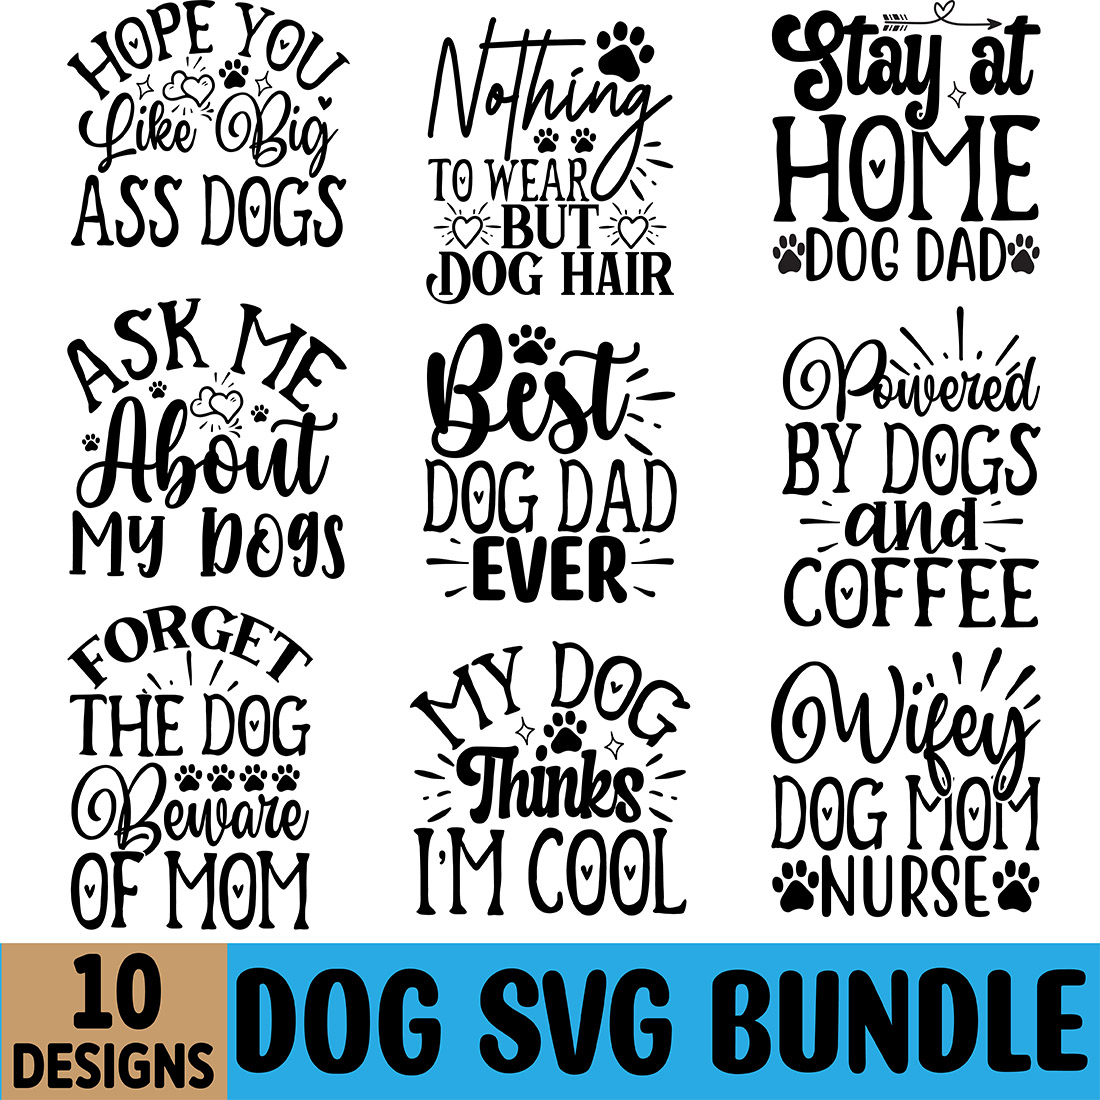 Dog SVG Design Bundle preview image.